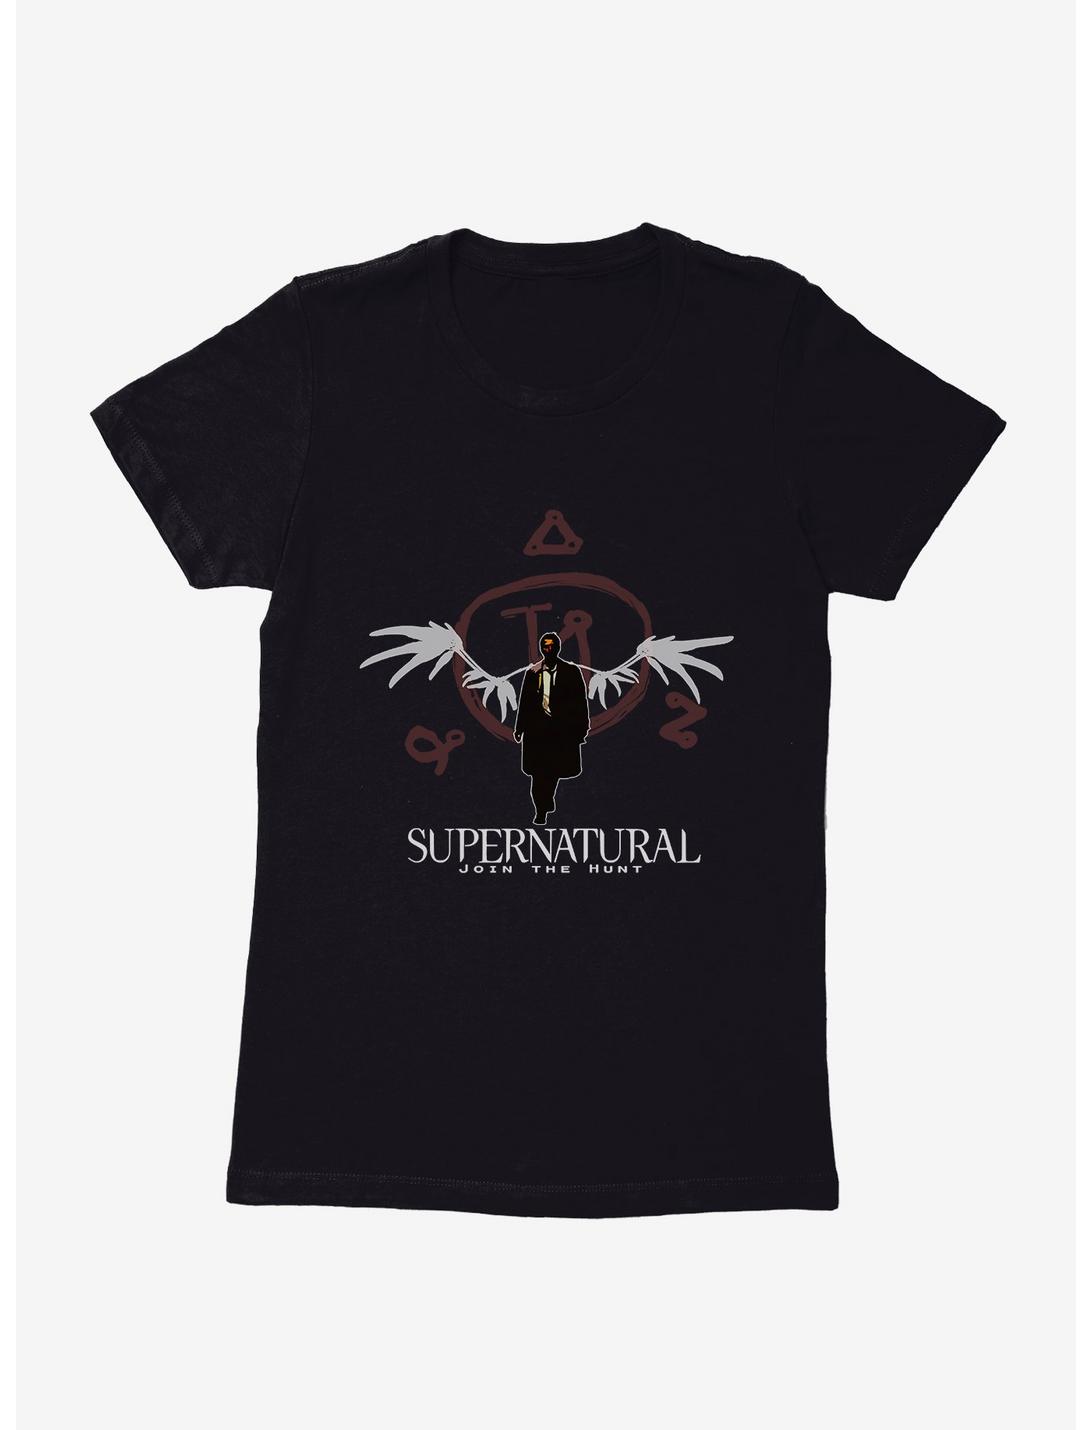 Supernatural Castiel Angel Seal Womens T-Shirt, , hi-res